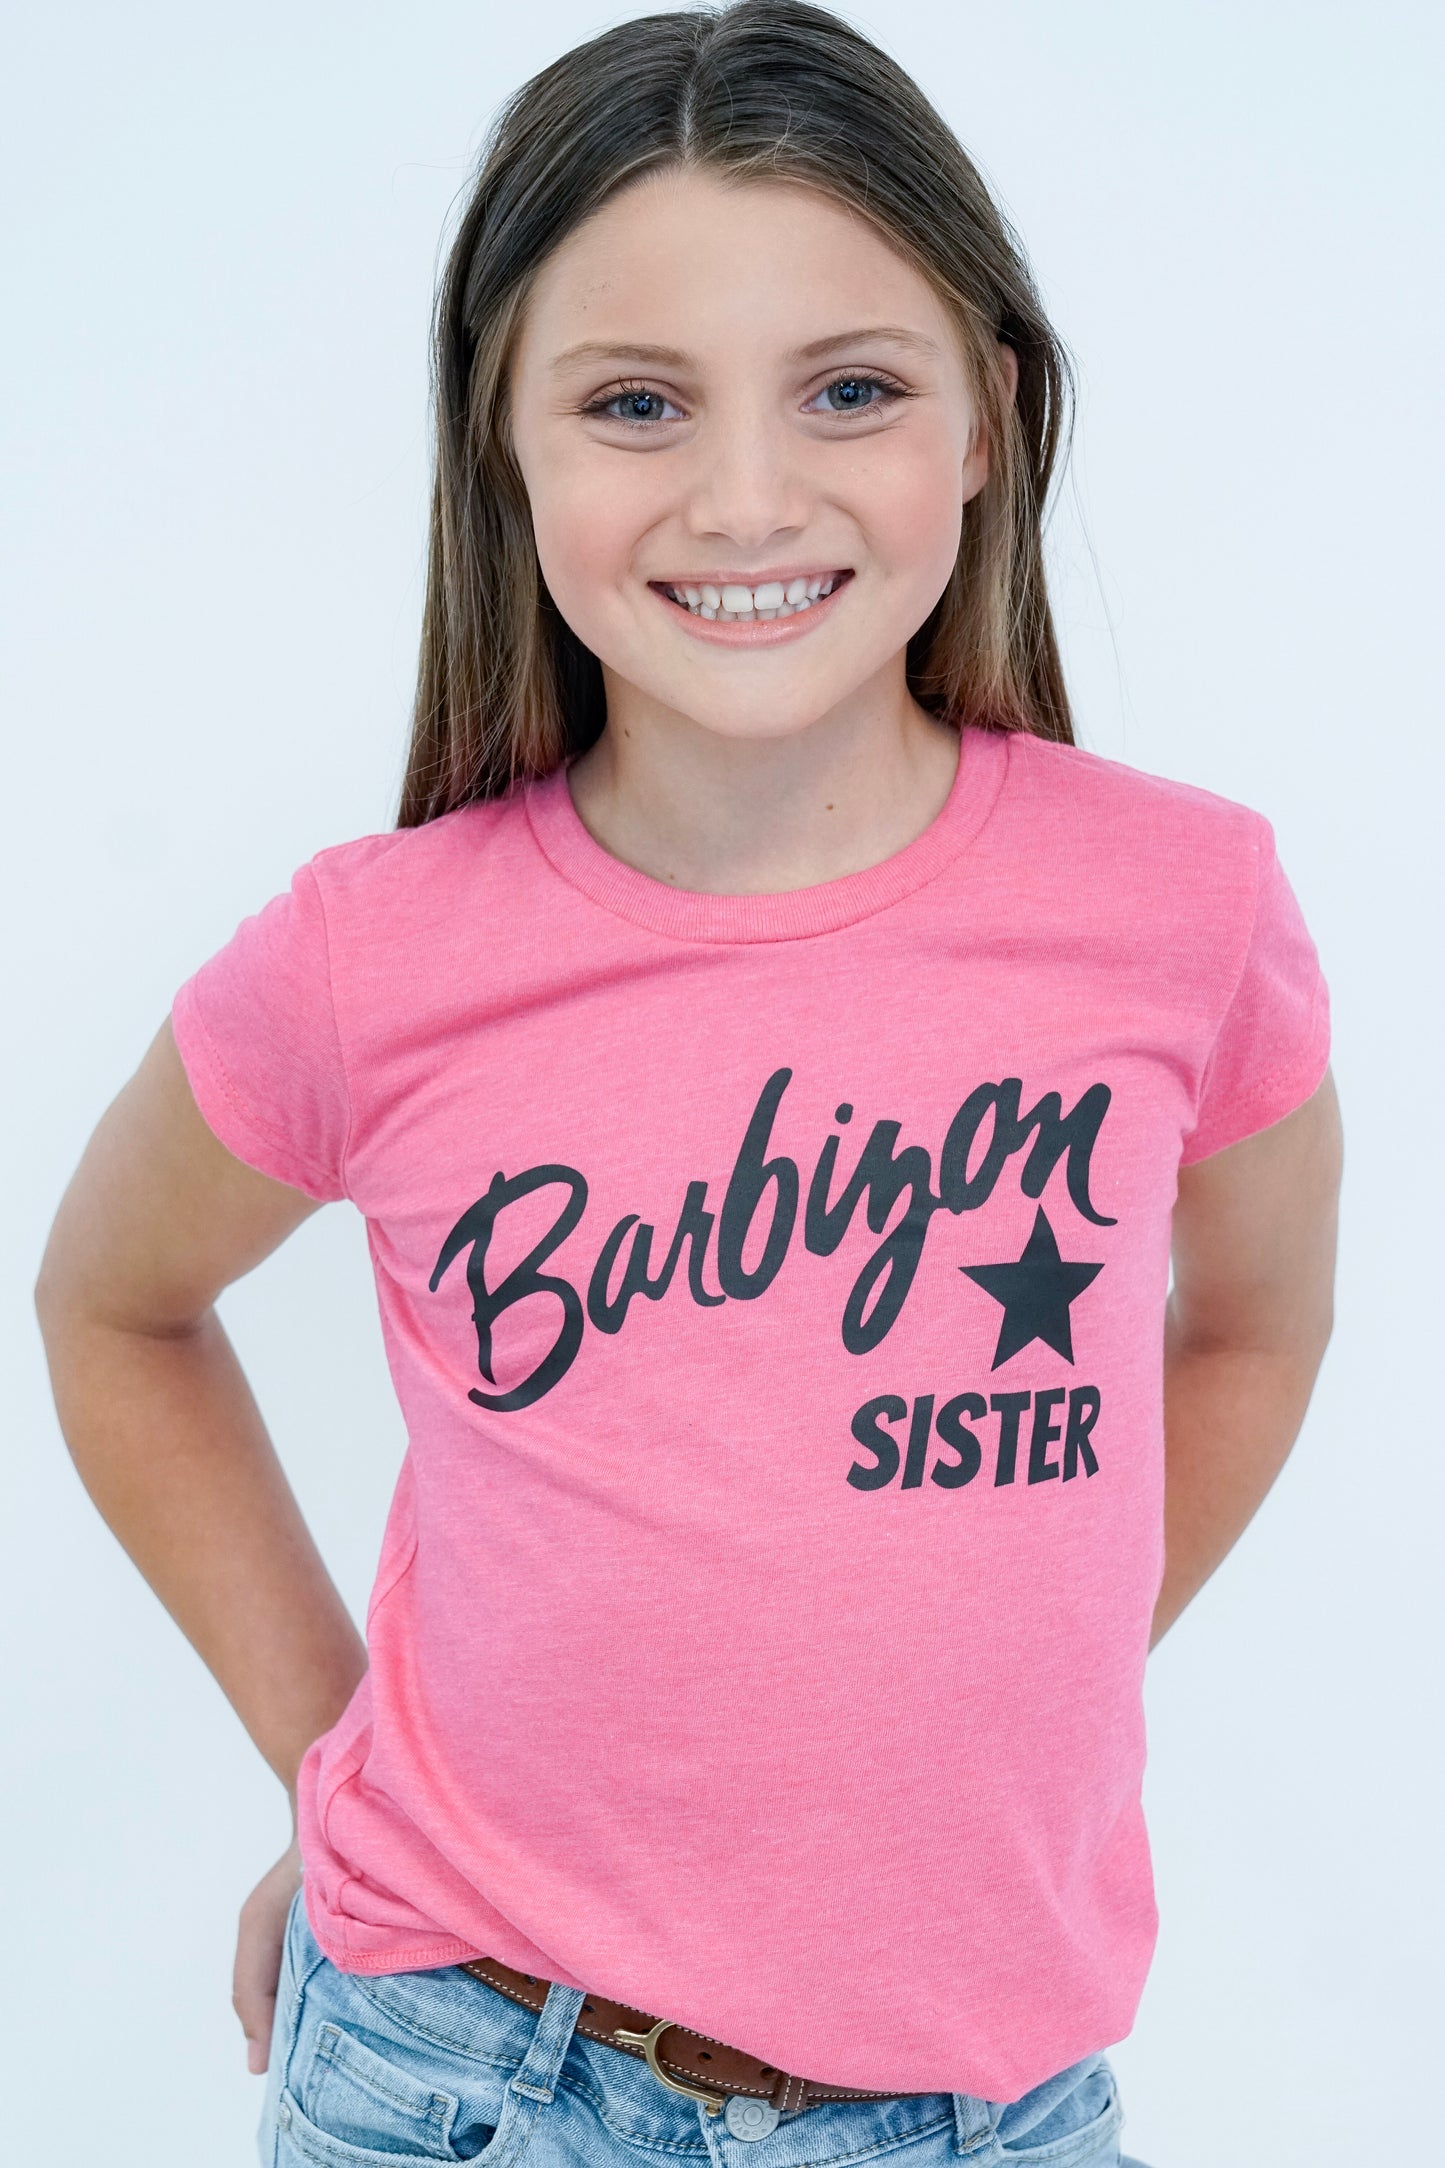 Barbizon Sister